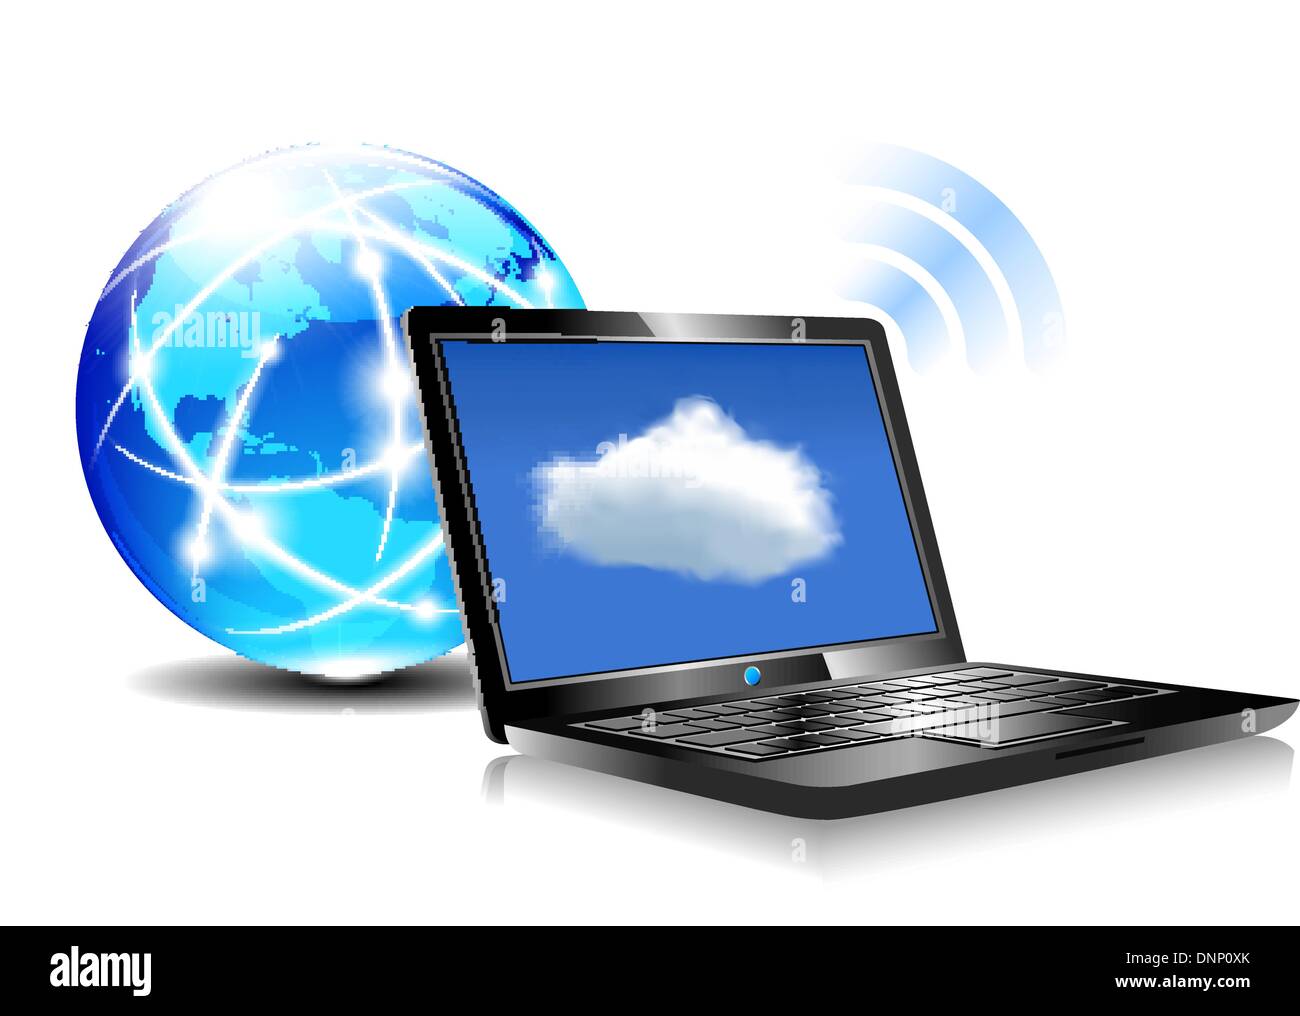 Clientcomputer, die mit Ressourcen befinden sich in der "Cloud" virtuelle Welt Symbol Laptop kommunizieren Stock Vektor